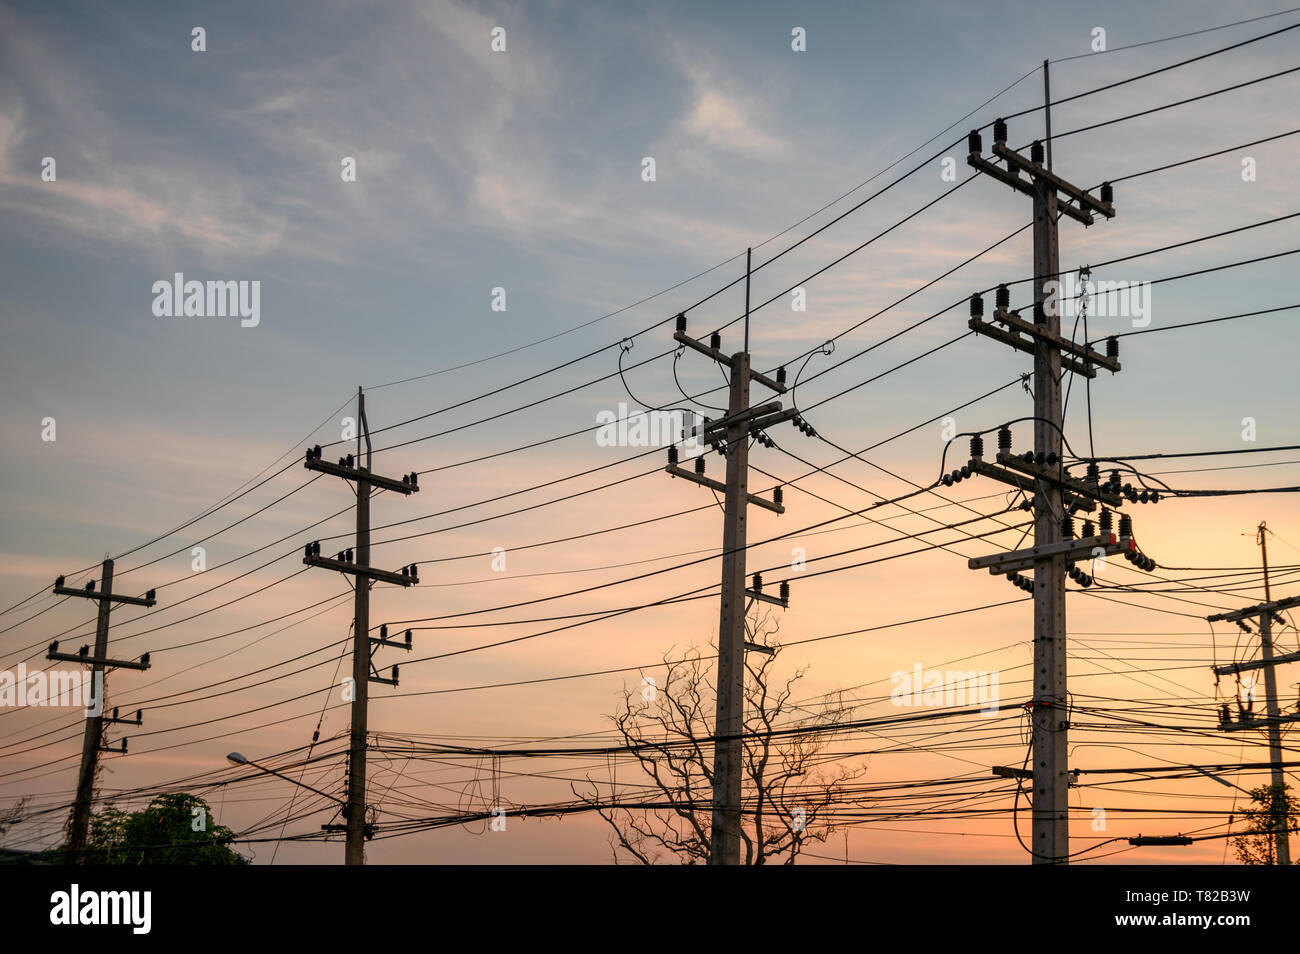 Ländliche Reihen von strommast mit Kabel Netzwerk auf Sonnenuntergang Hintergrund Stockfoto